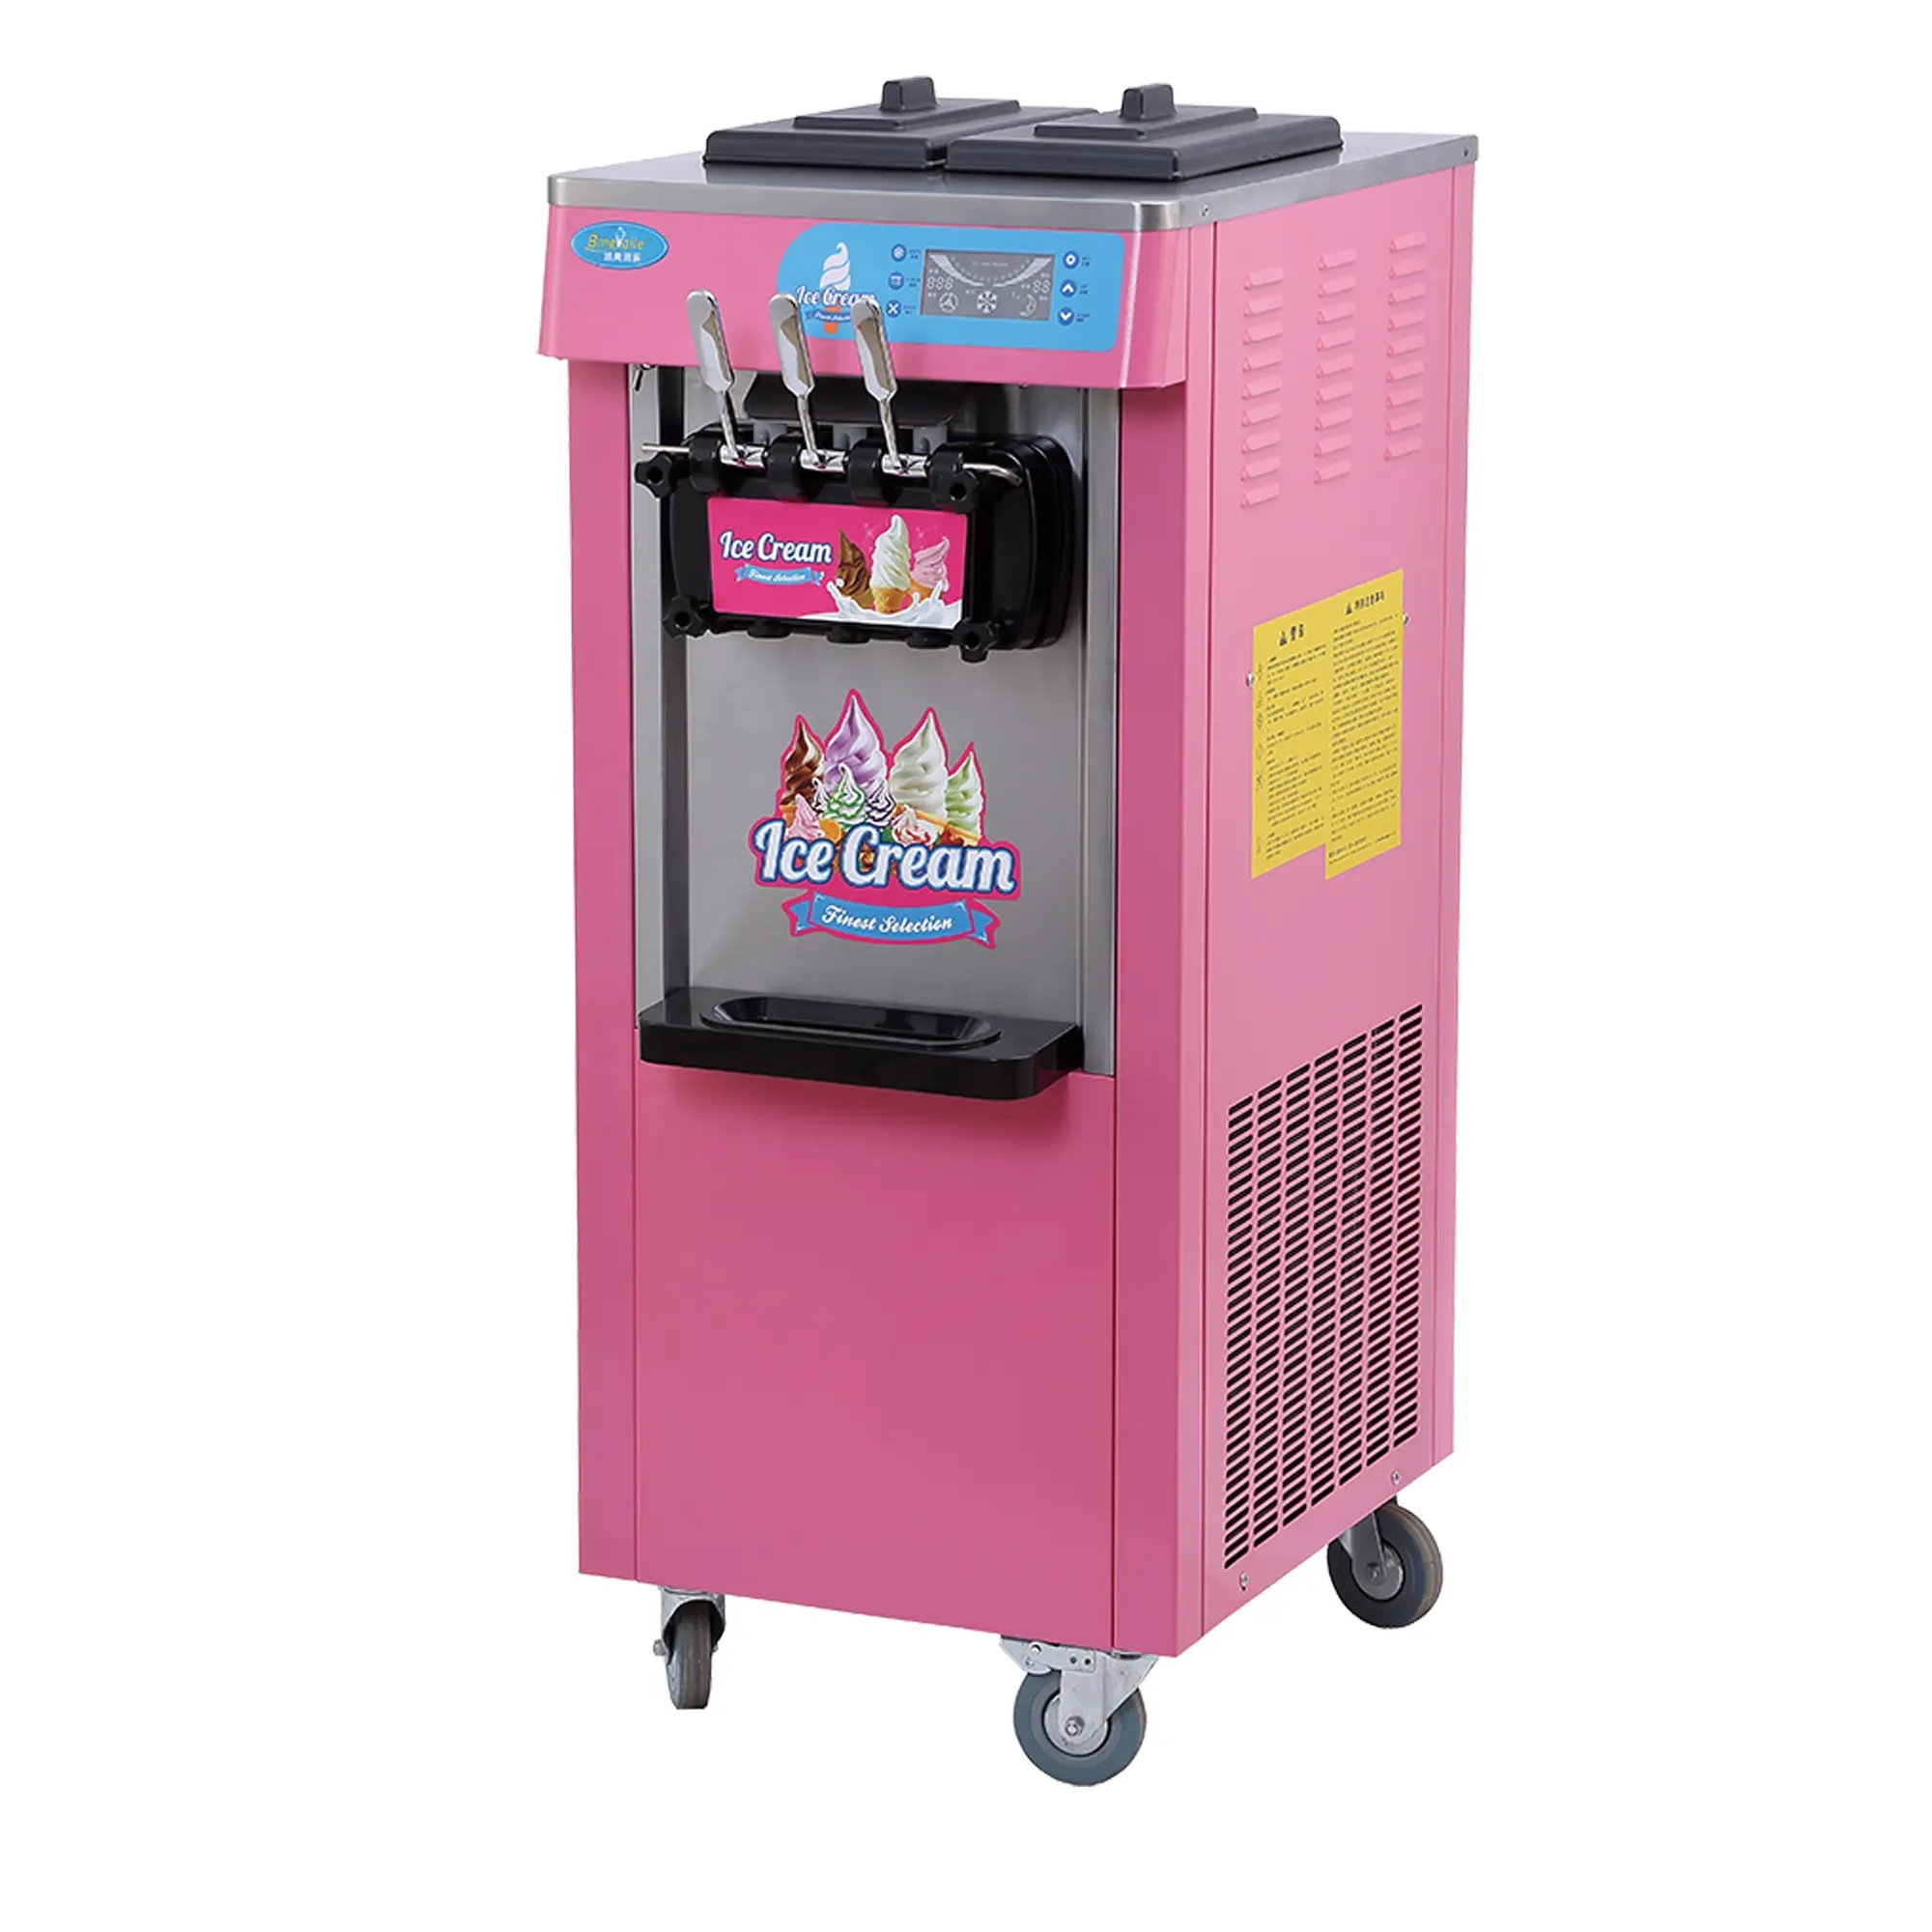 Üç tatlar yumuşak dondurma makinesi ticari dondurma makinesi olmalı var ajan